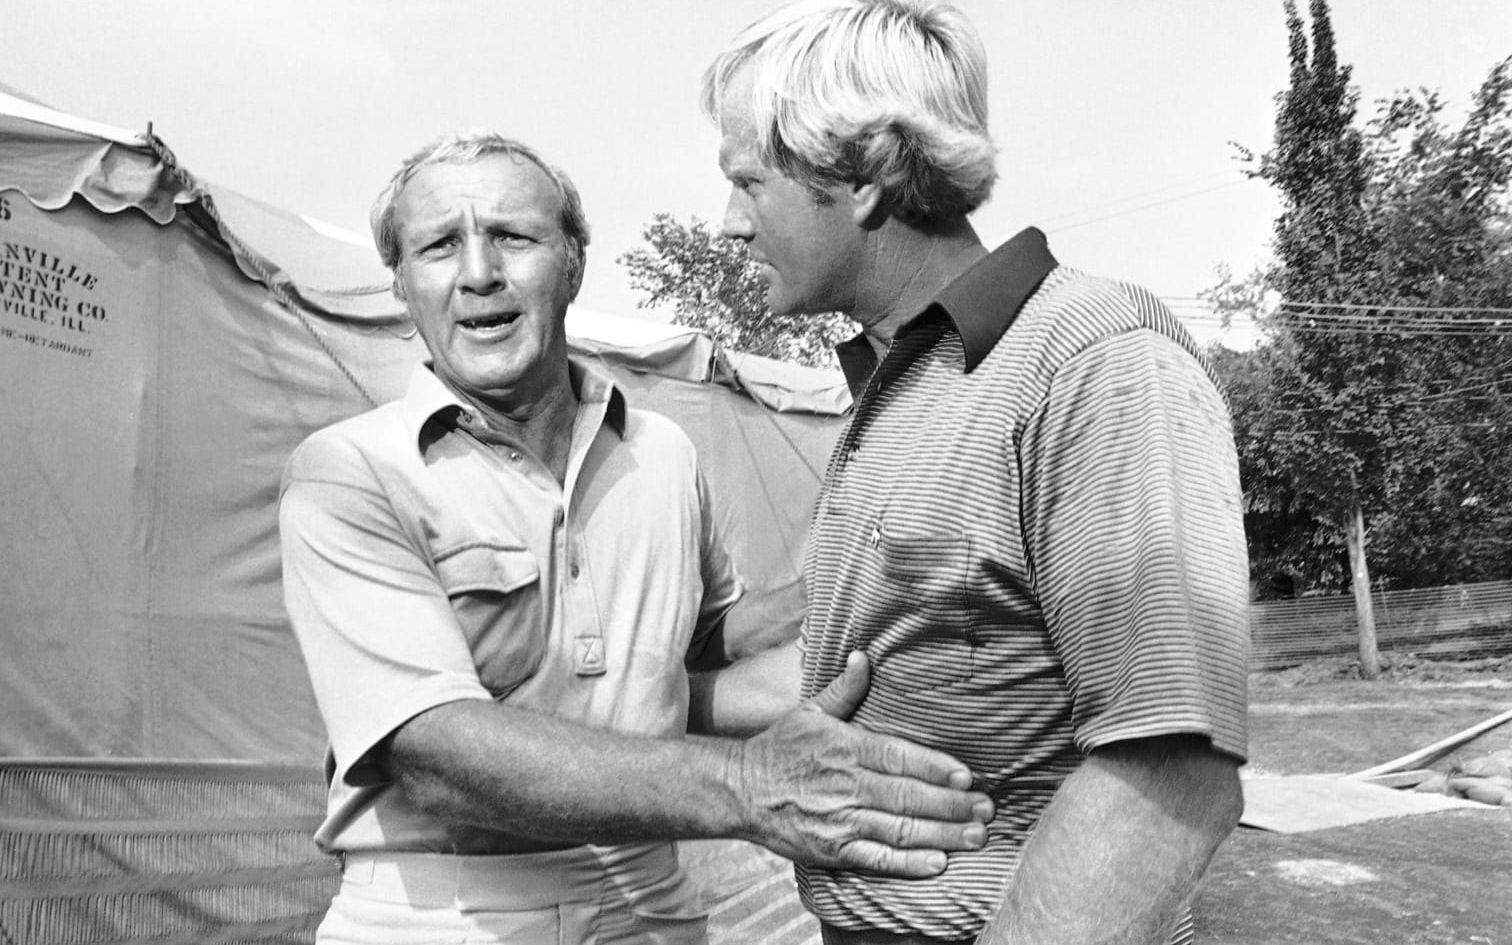 De båda golfstjärnorna duellerade sedan i de stora turneringarna i många år framöver. Palmer vann sju majors – Nicklaus tog otroliga 18. Foto: TT